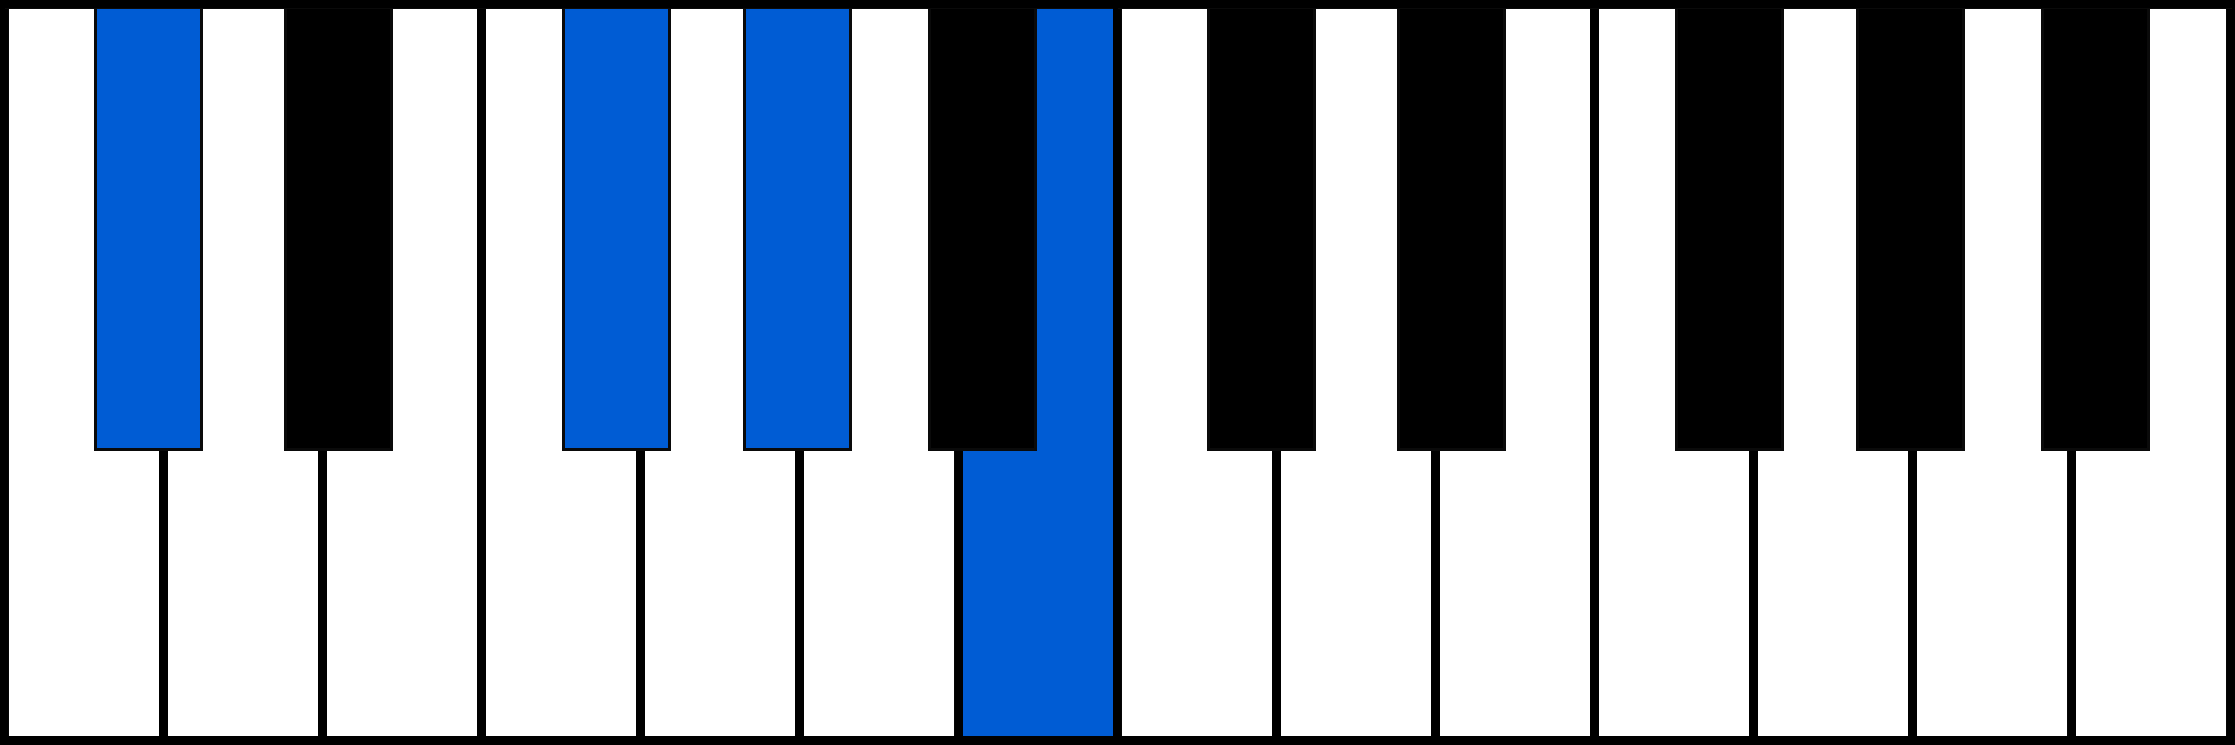 C#7sus4 piano chord fingering